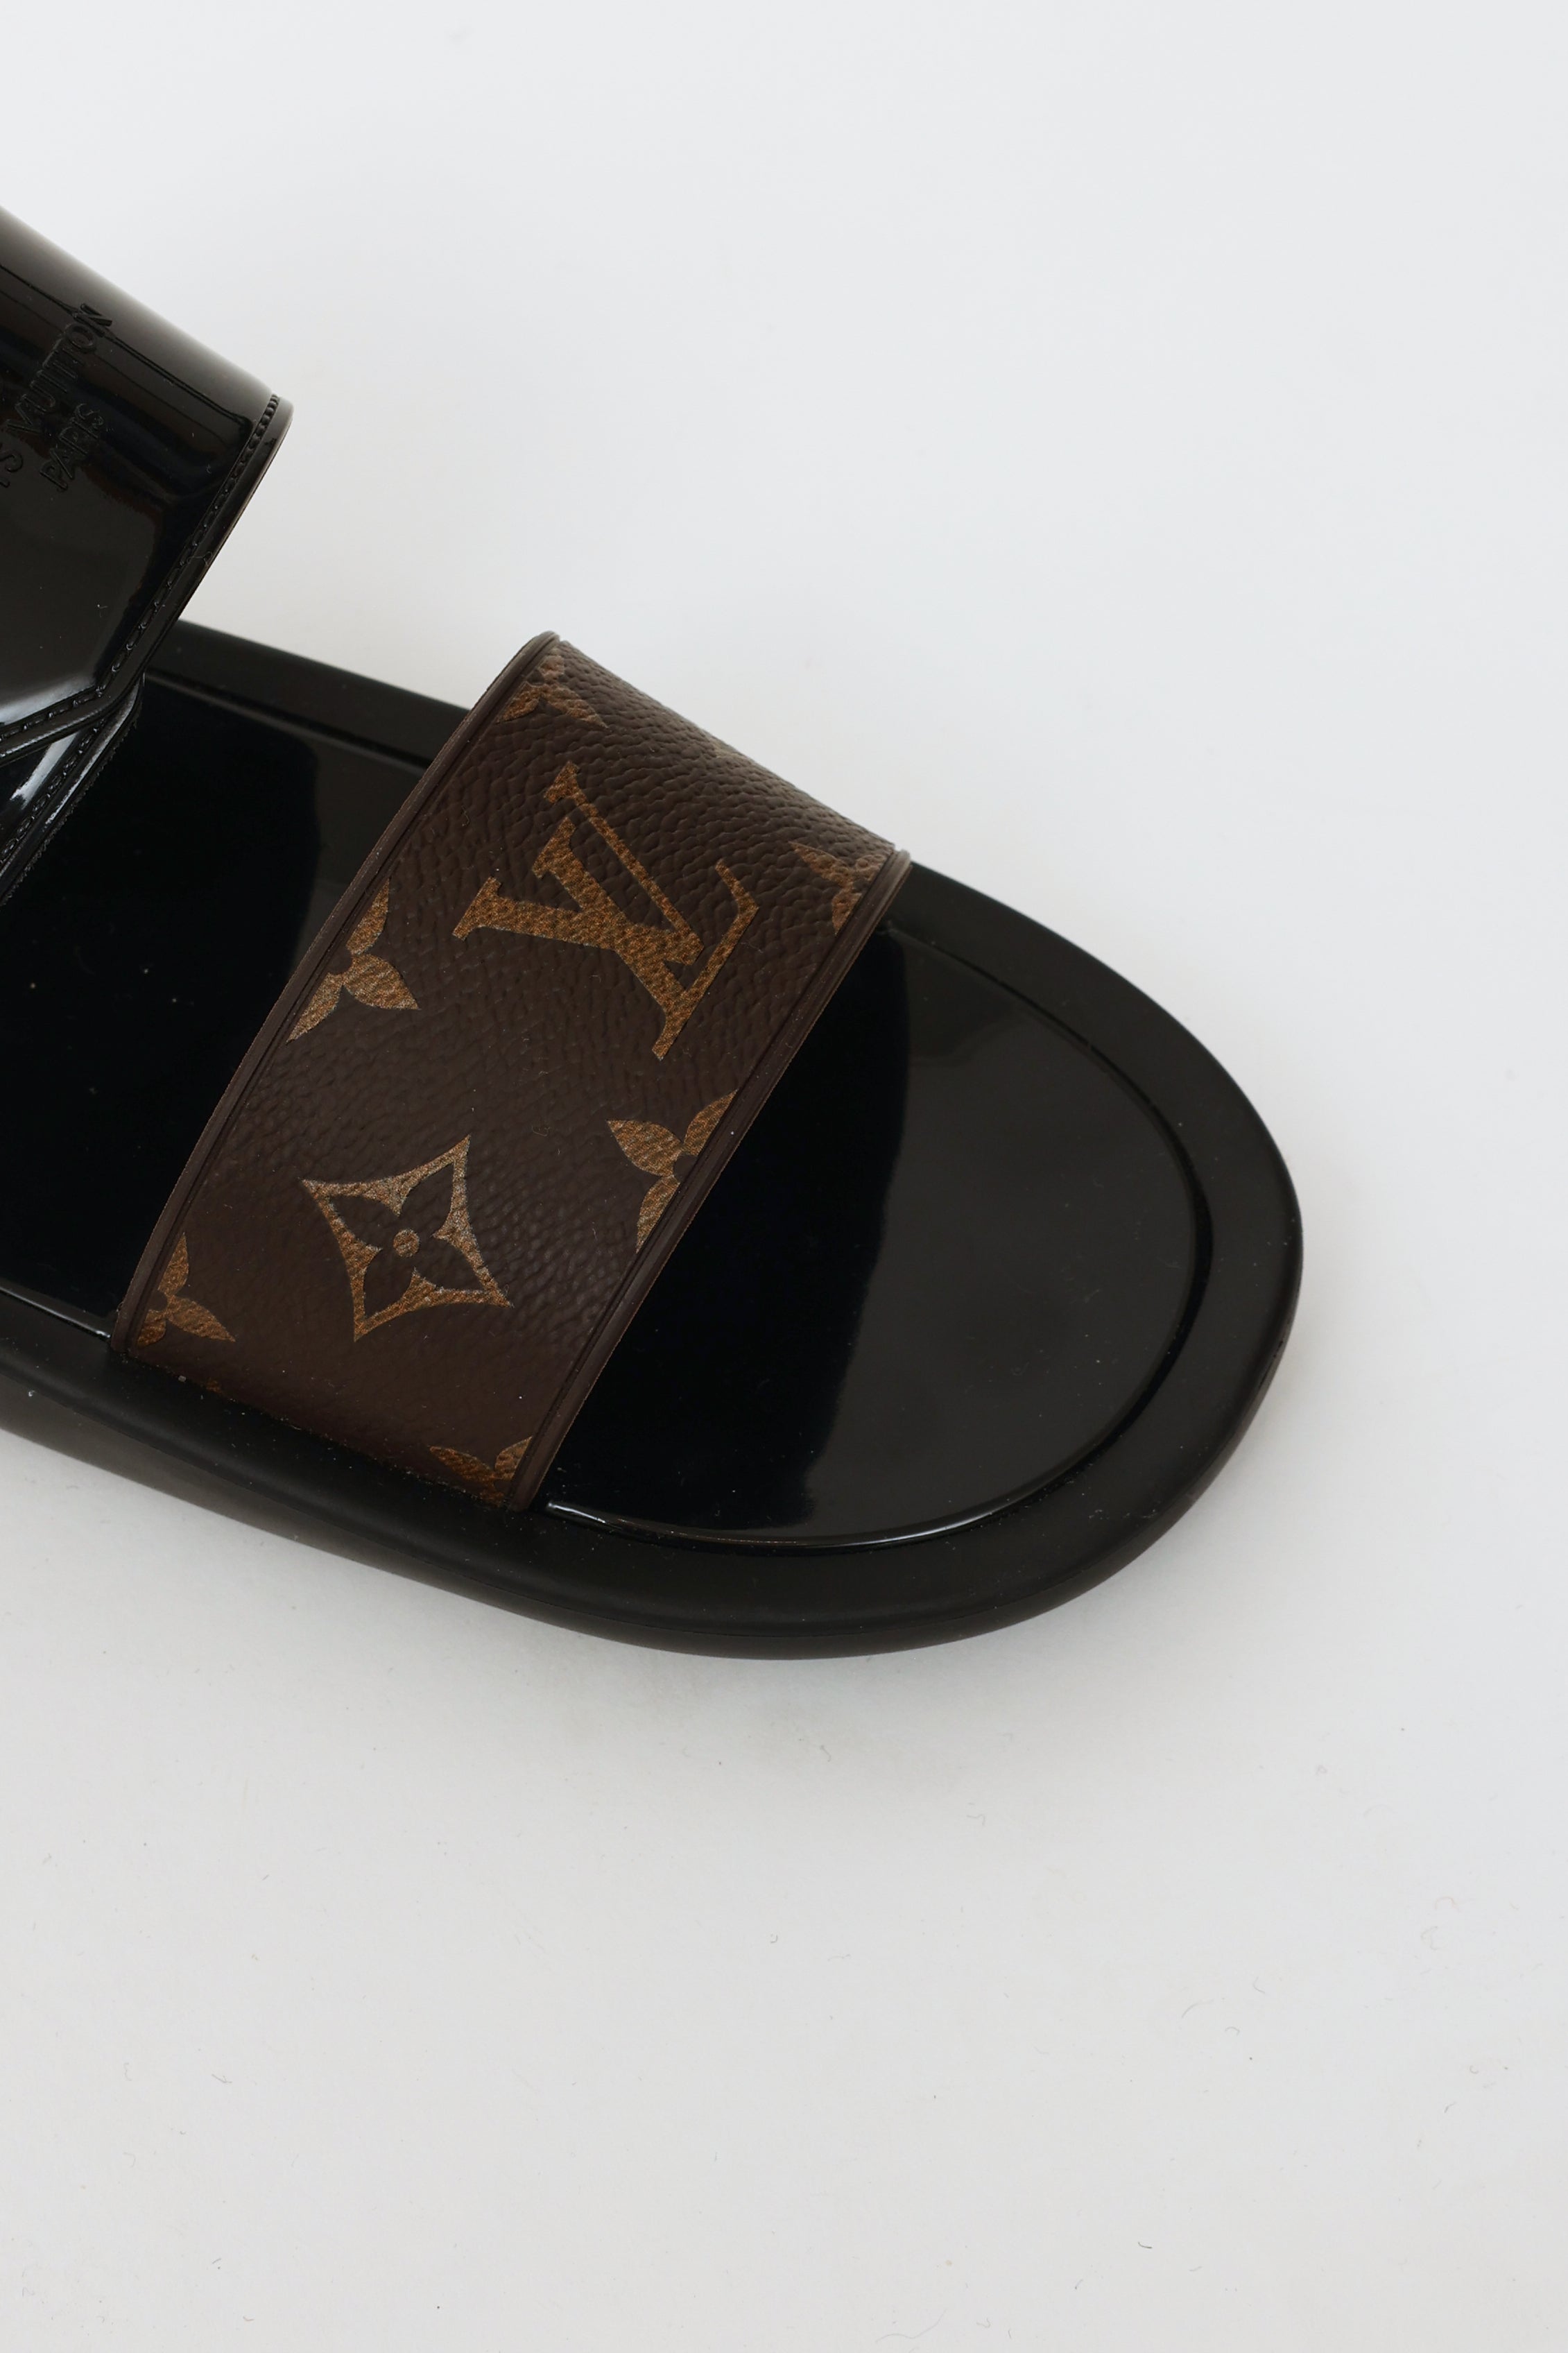 NEW Louis Vuitton Monogram LOGO SUNBATH MULES FLAT Shoes 37, US